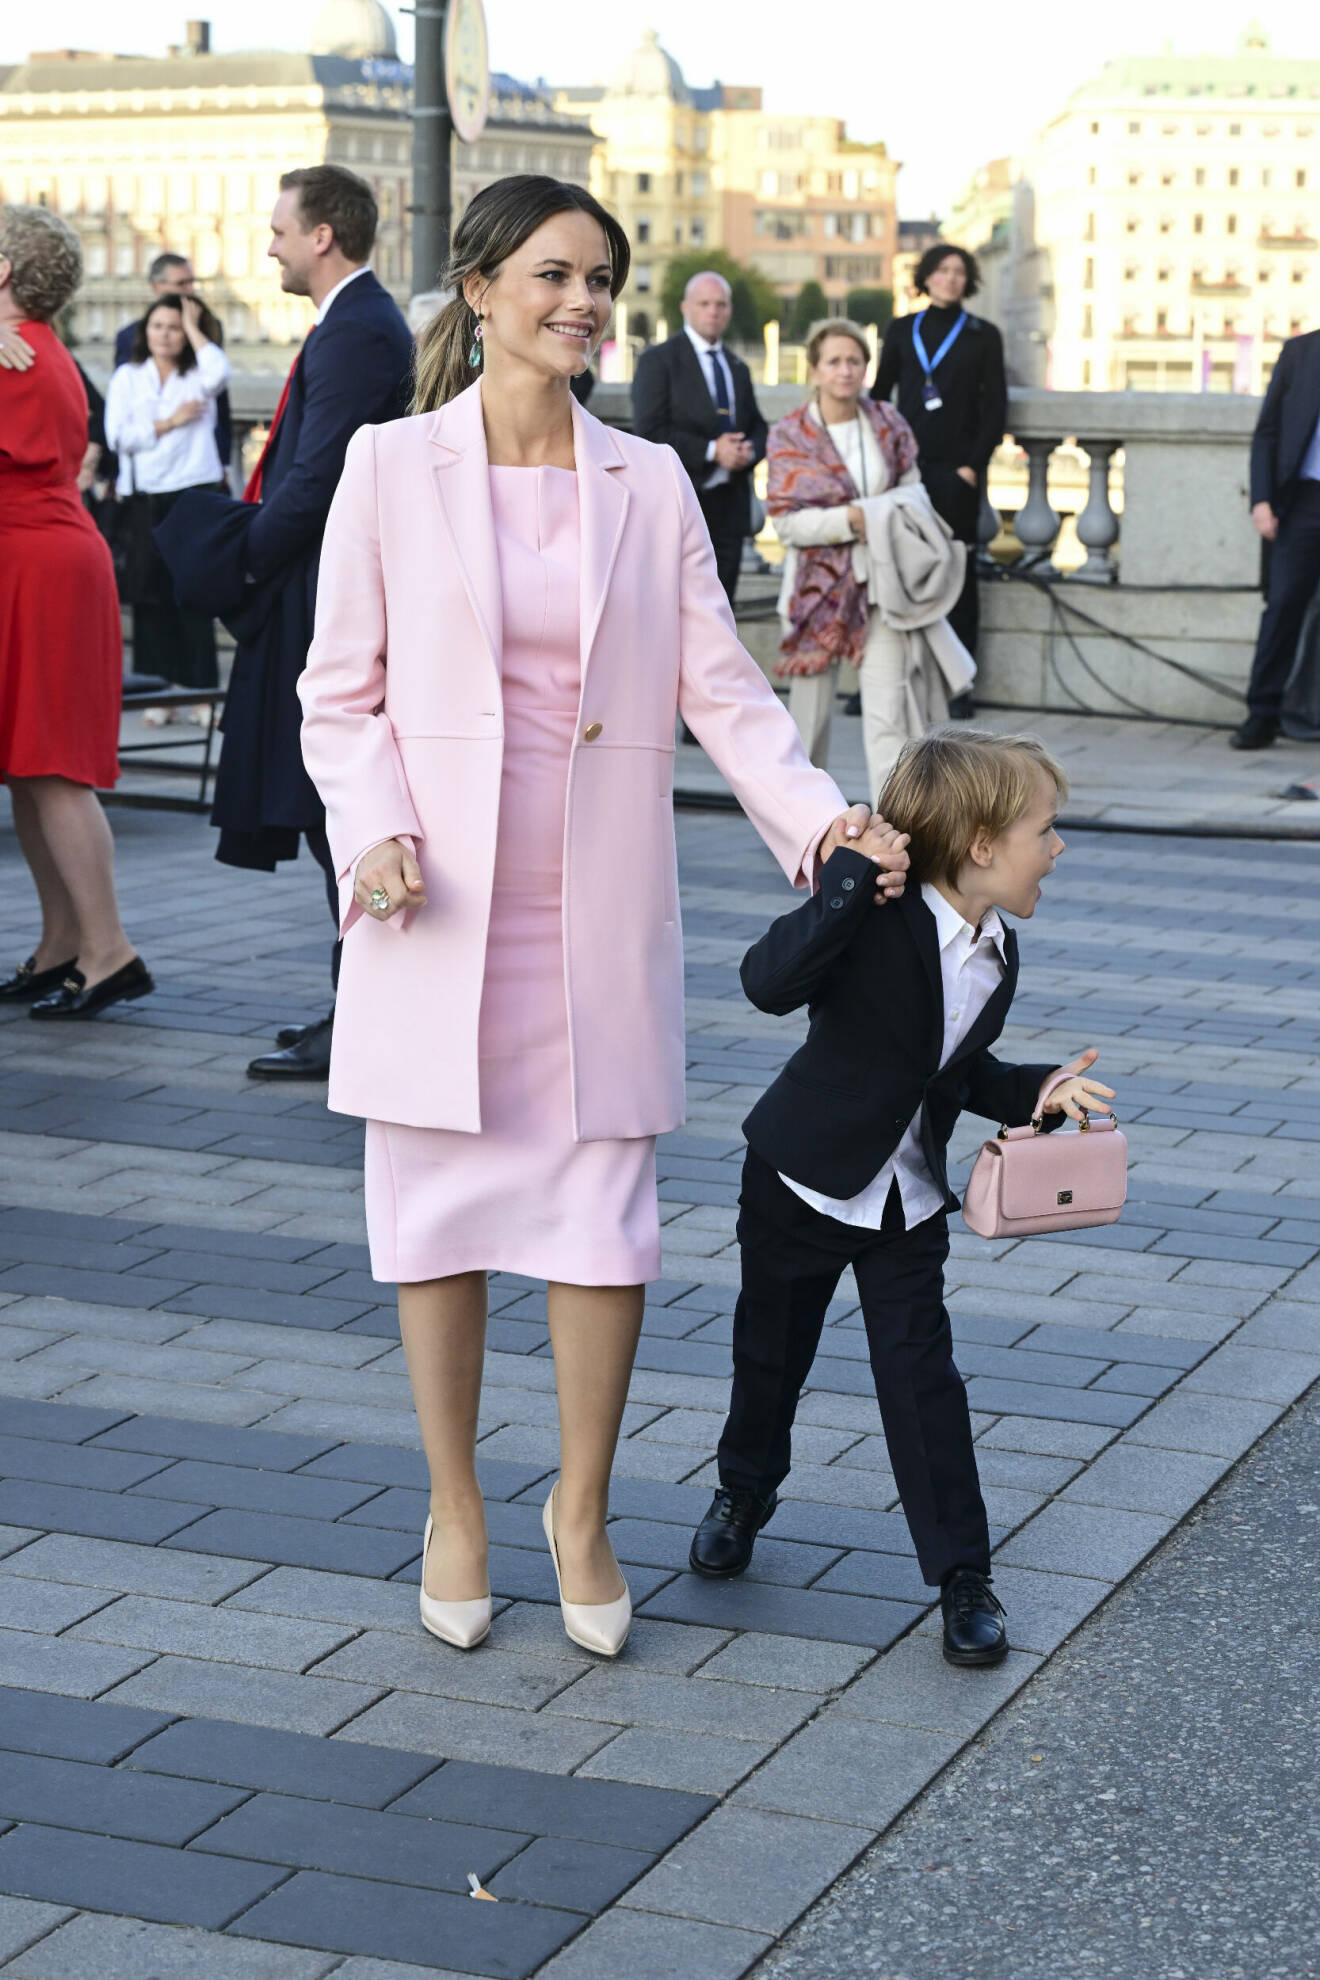 Prinsessan Sofia och prins Gabriel vid firandet när Stockholm stad arrangerar en jubileumskonsert på Norrbro under lördagen i samband med kung Carl XVI Gustafs 50-årsjubileum på tronen.